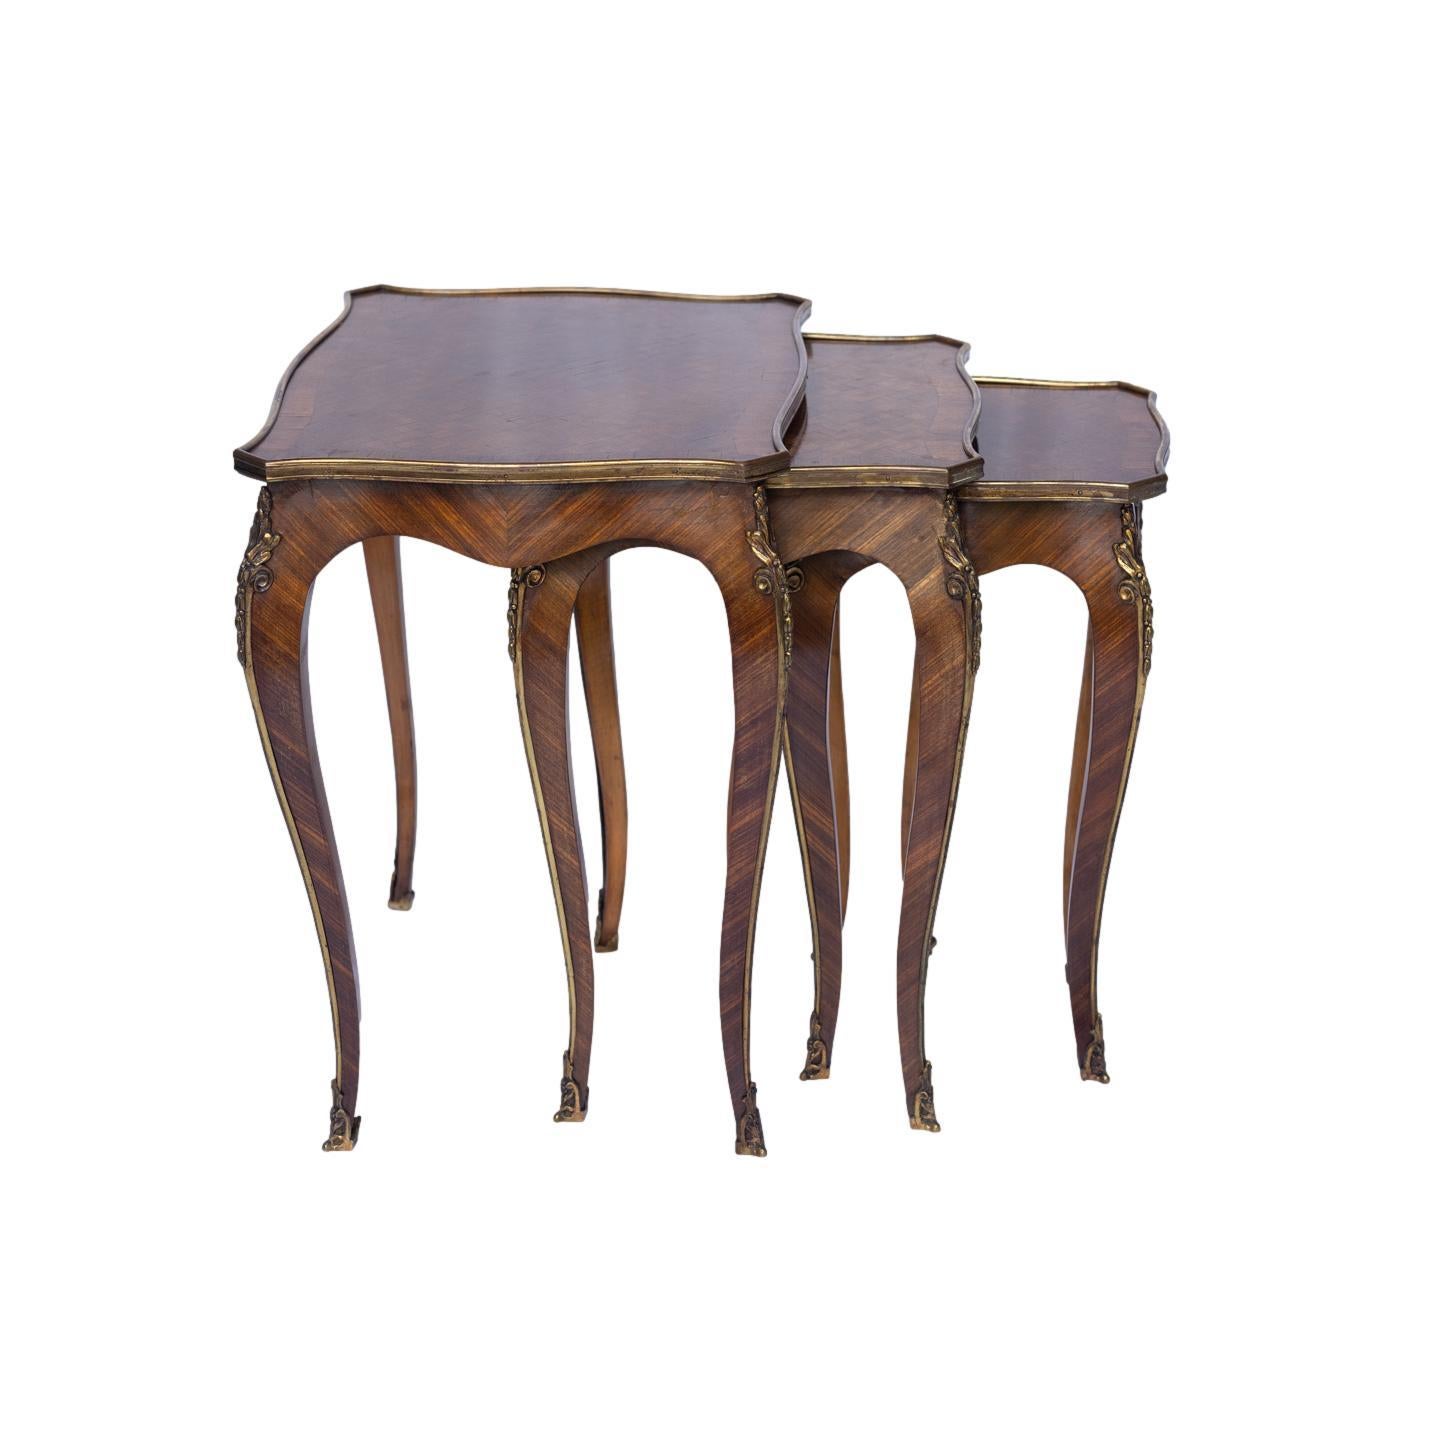 Suite de trois tables gigognes de style Louis XV en bois de roi et parqueterie, chacune avec un plateau rectangulaire façonné et bagué, centré par un panneau de parqueterie et dans un bandeau d'ormolu, reposant sur des pieds cabriole surmontés de